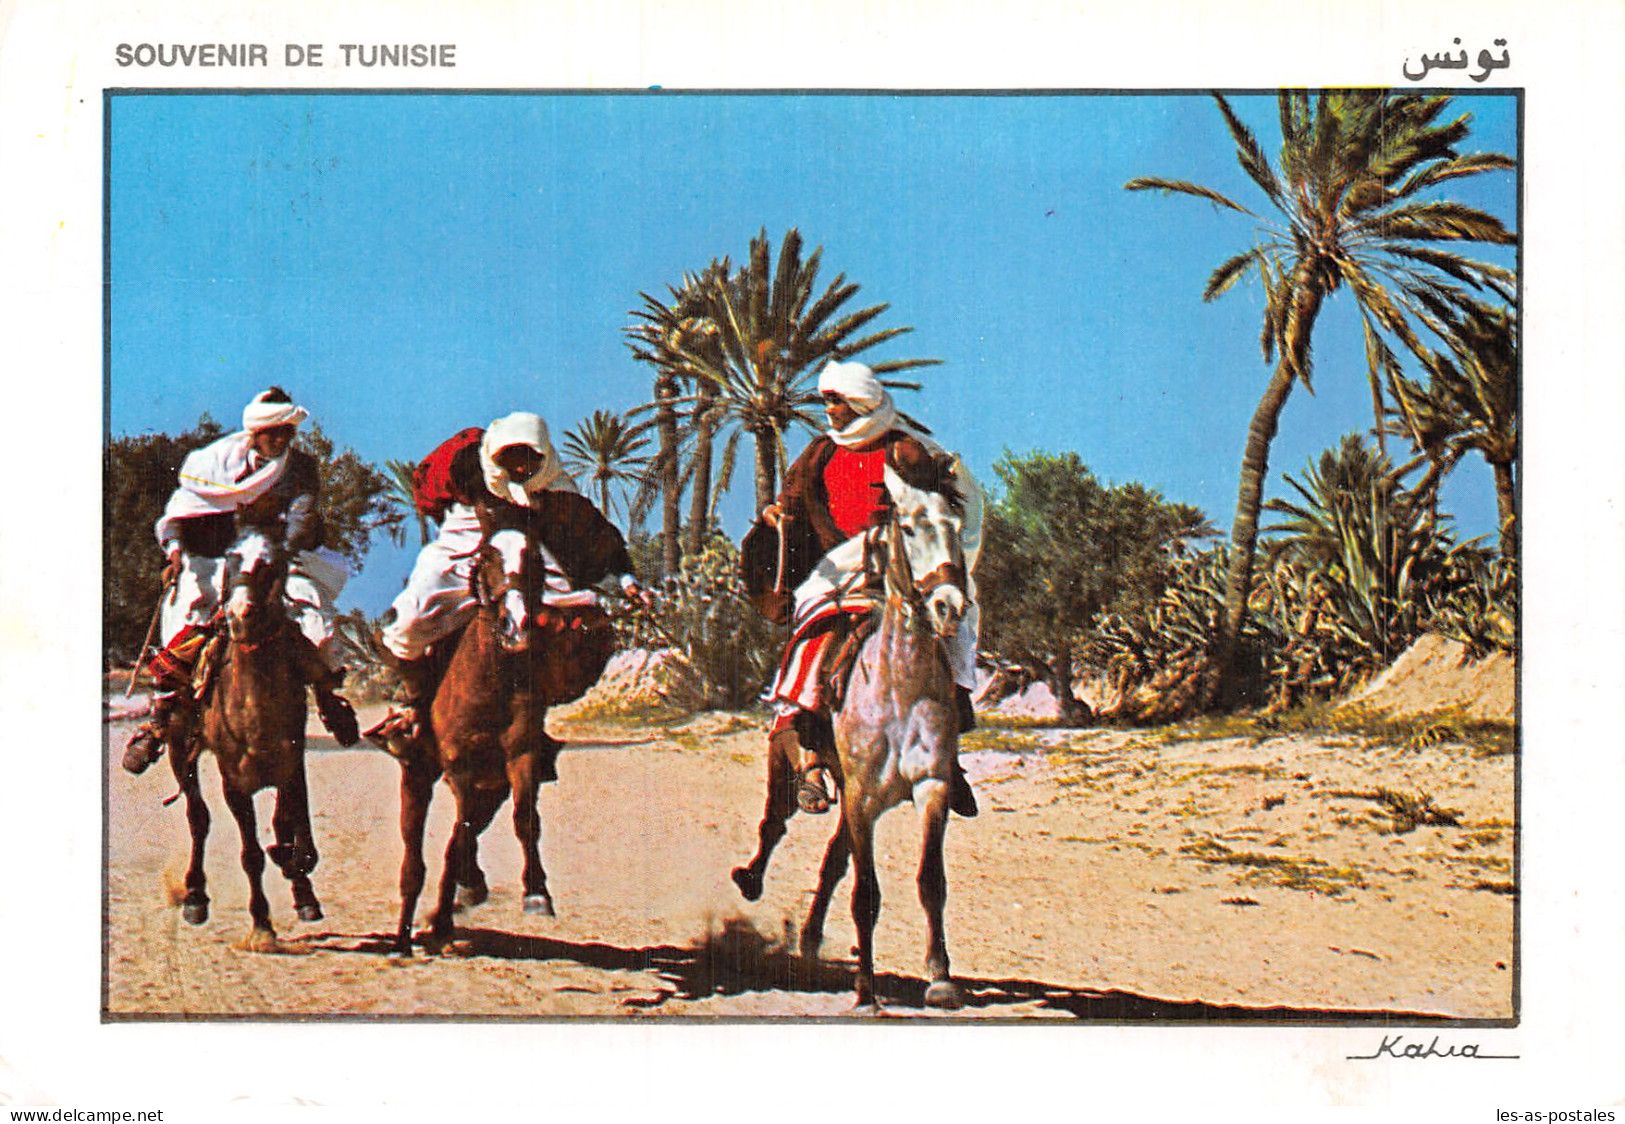 TUNISIE FANTASIA A MIDOUN - Tunisia